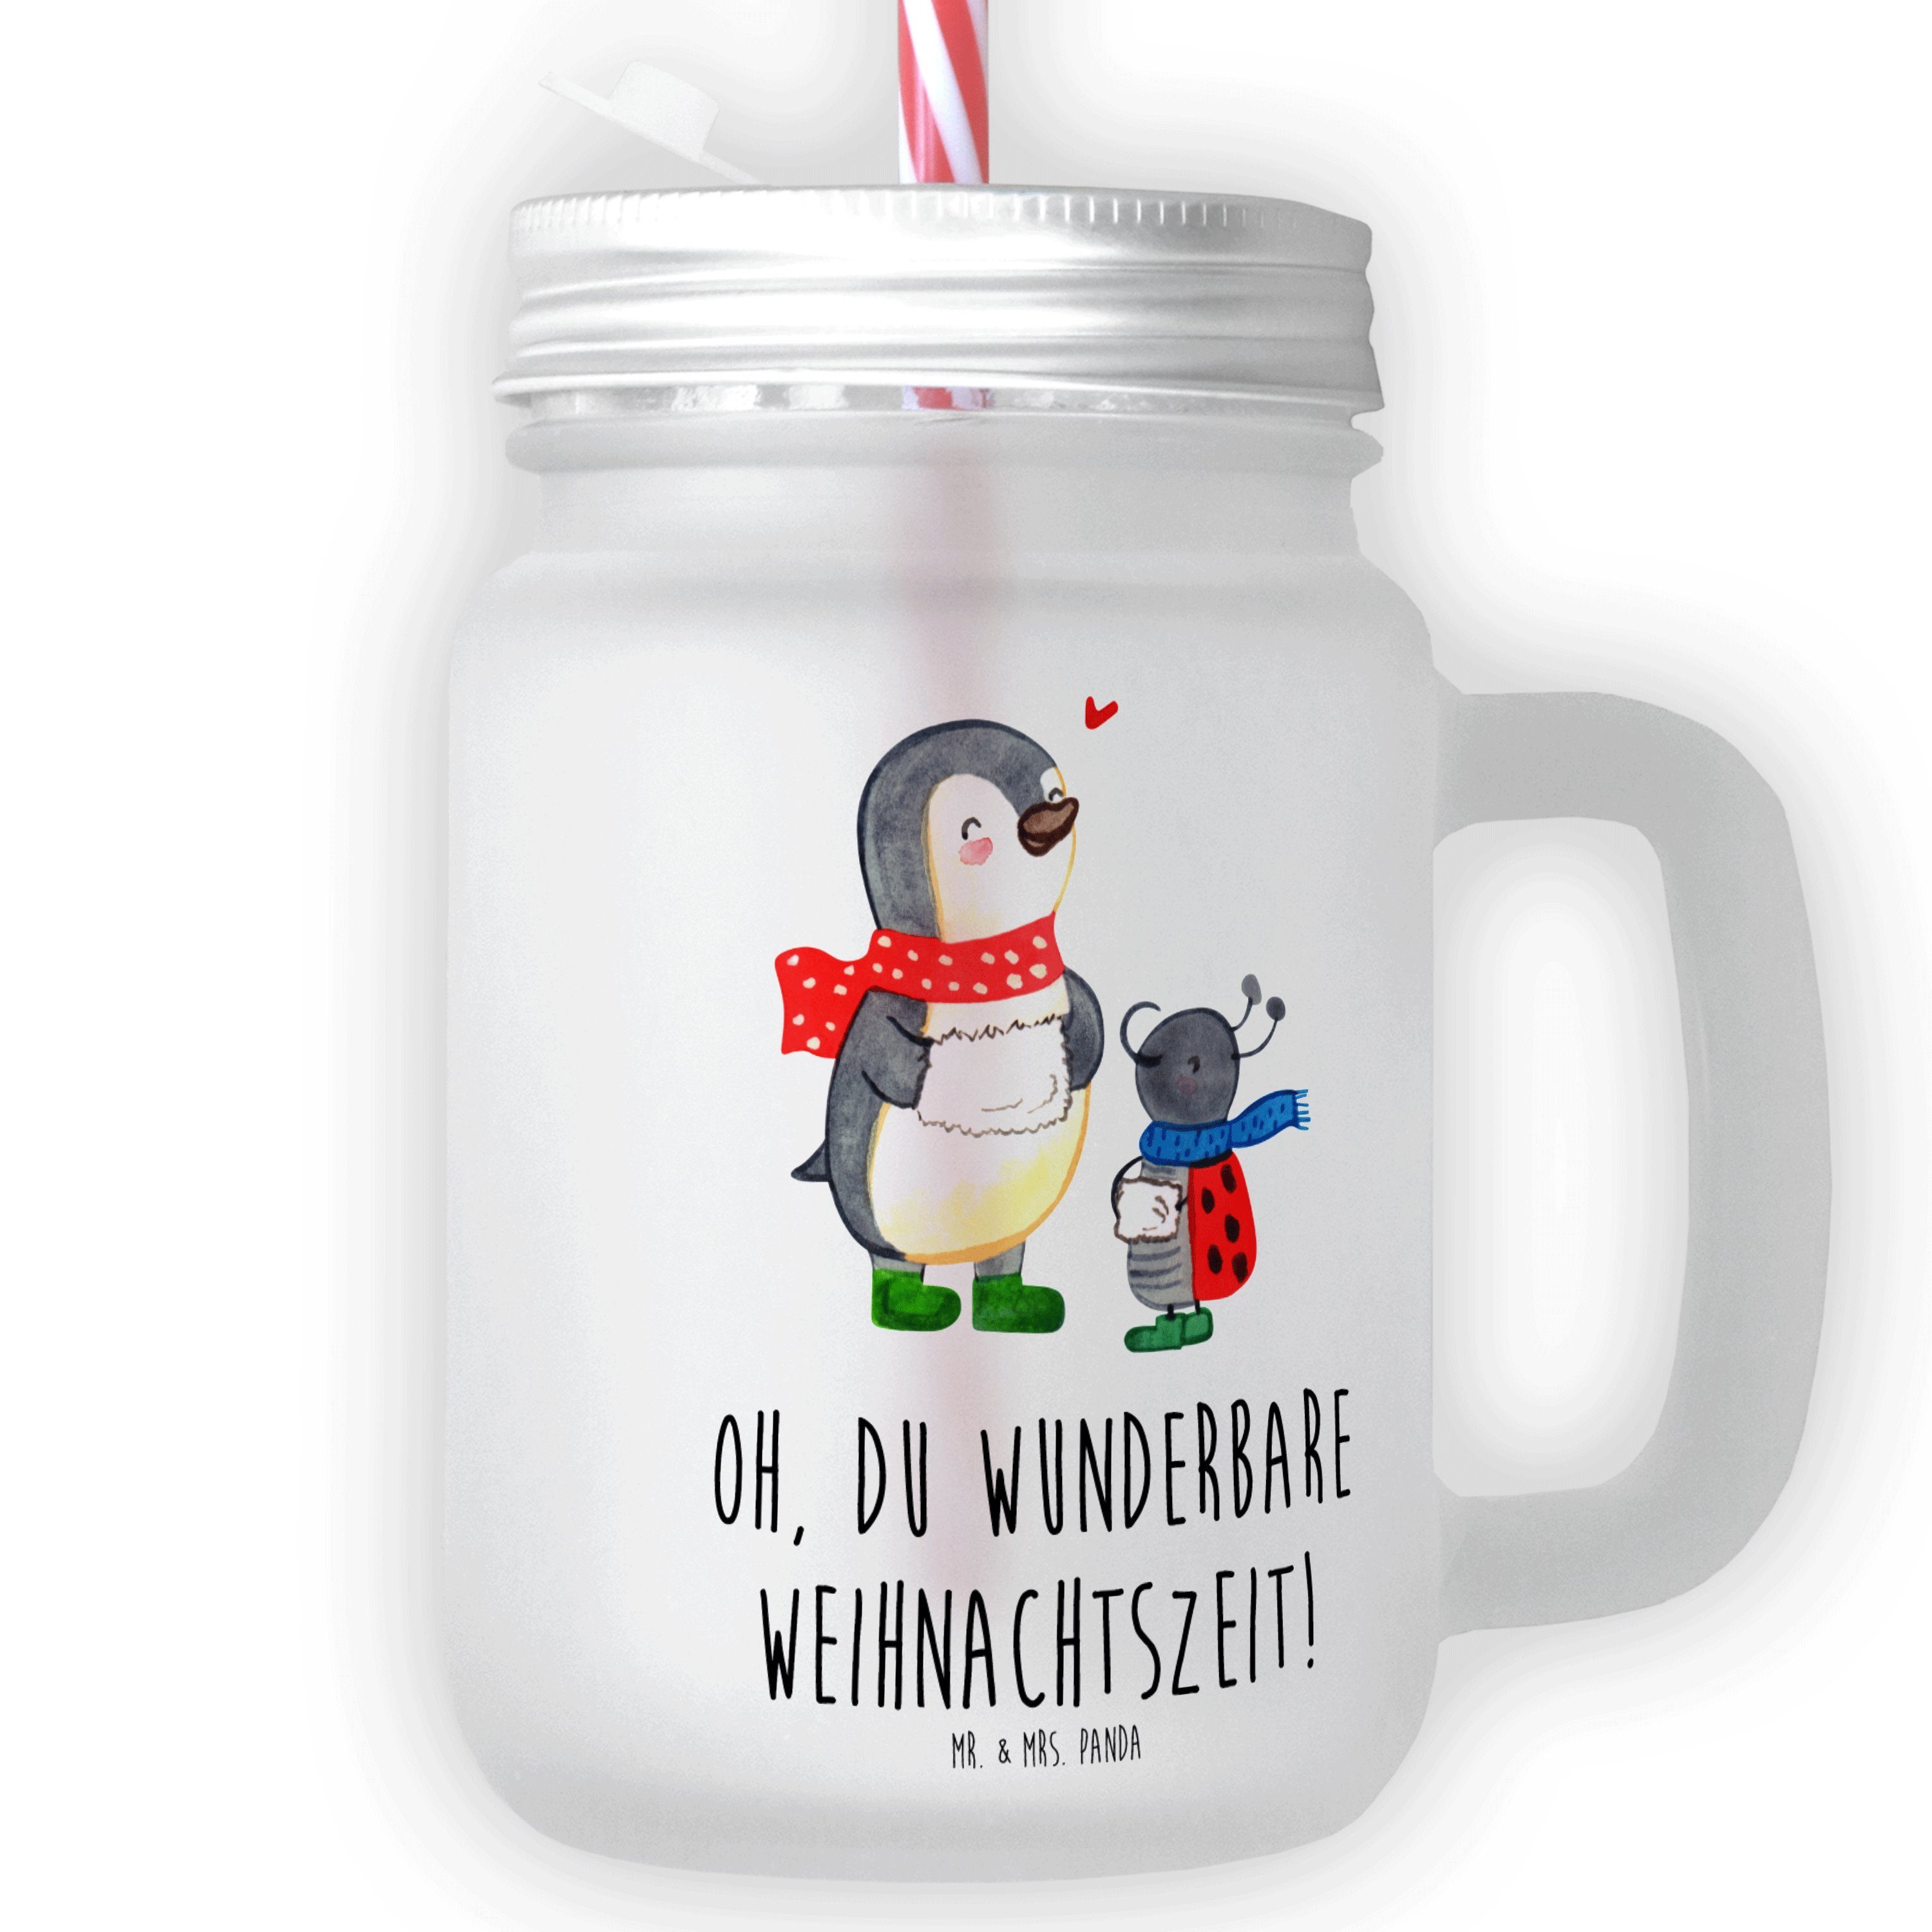 Mr. & Mrs. Panda Glas Smörle Winterzeit - Transparent - Geschenk, Strohhalm Glas, Glas, Wei, Premium Glas